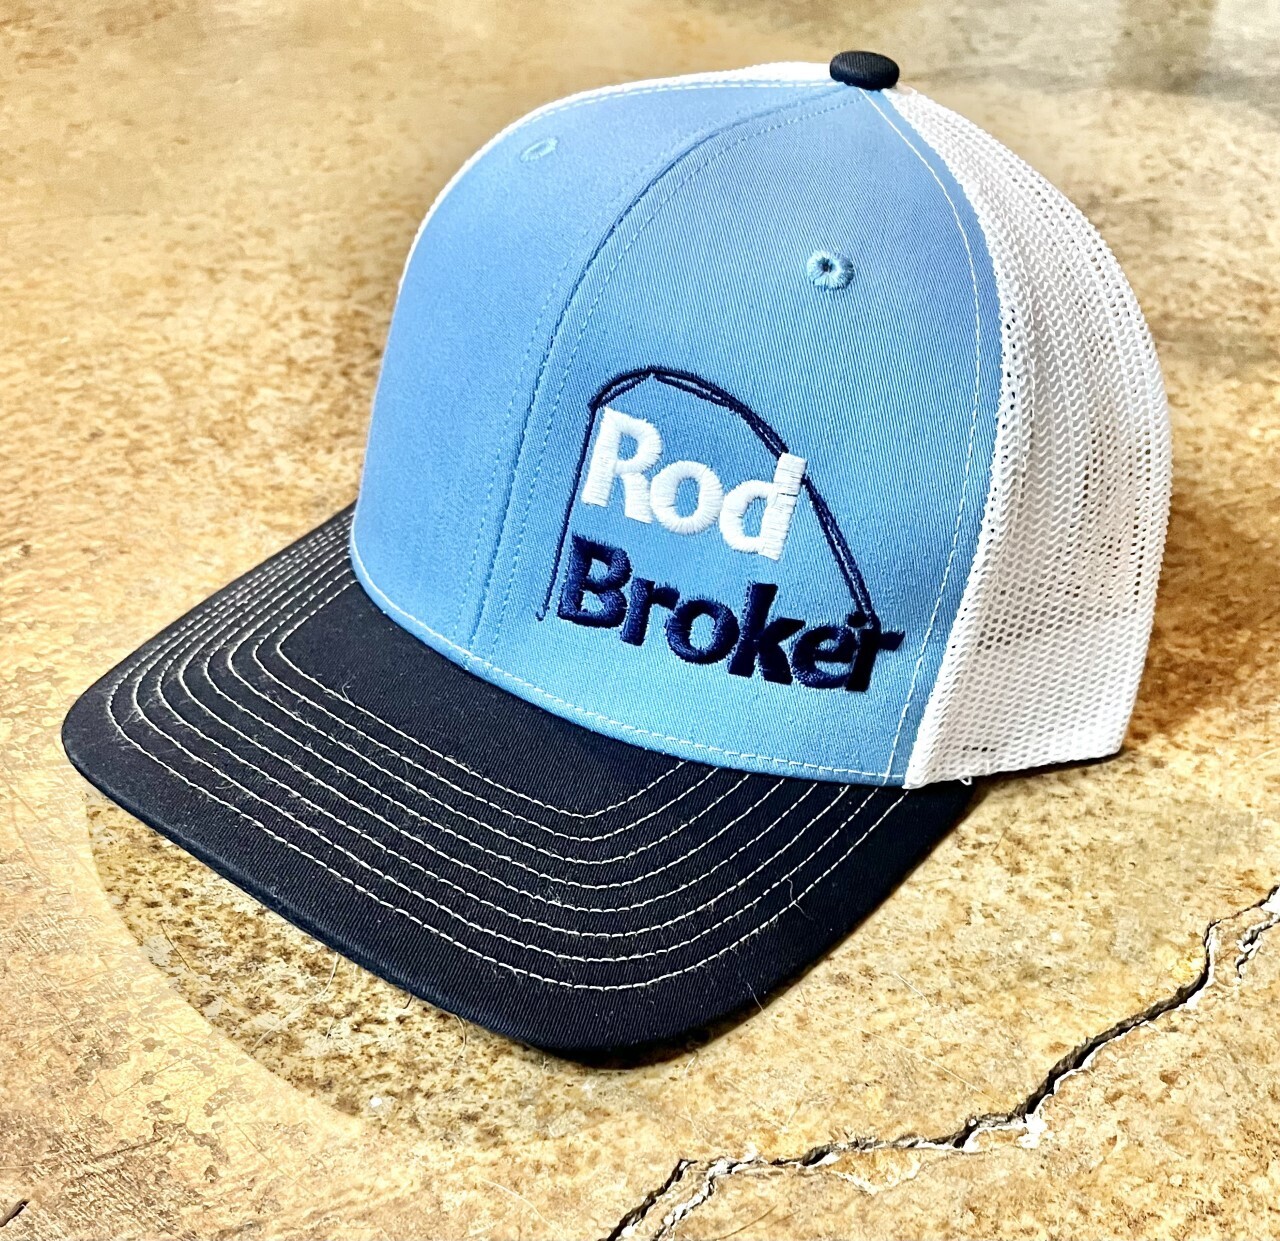 Rod Broker Trucker Hat